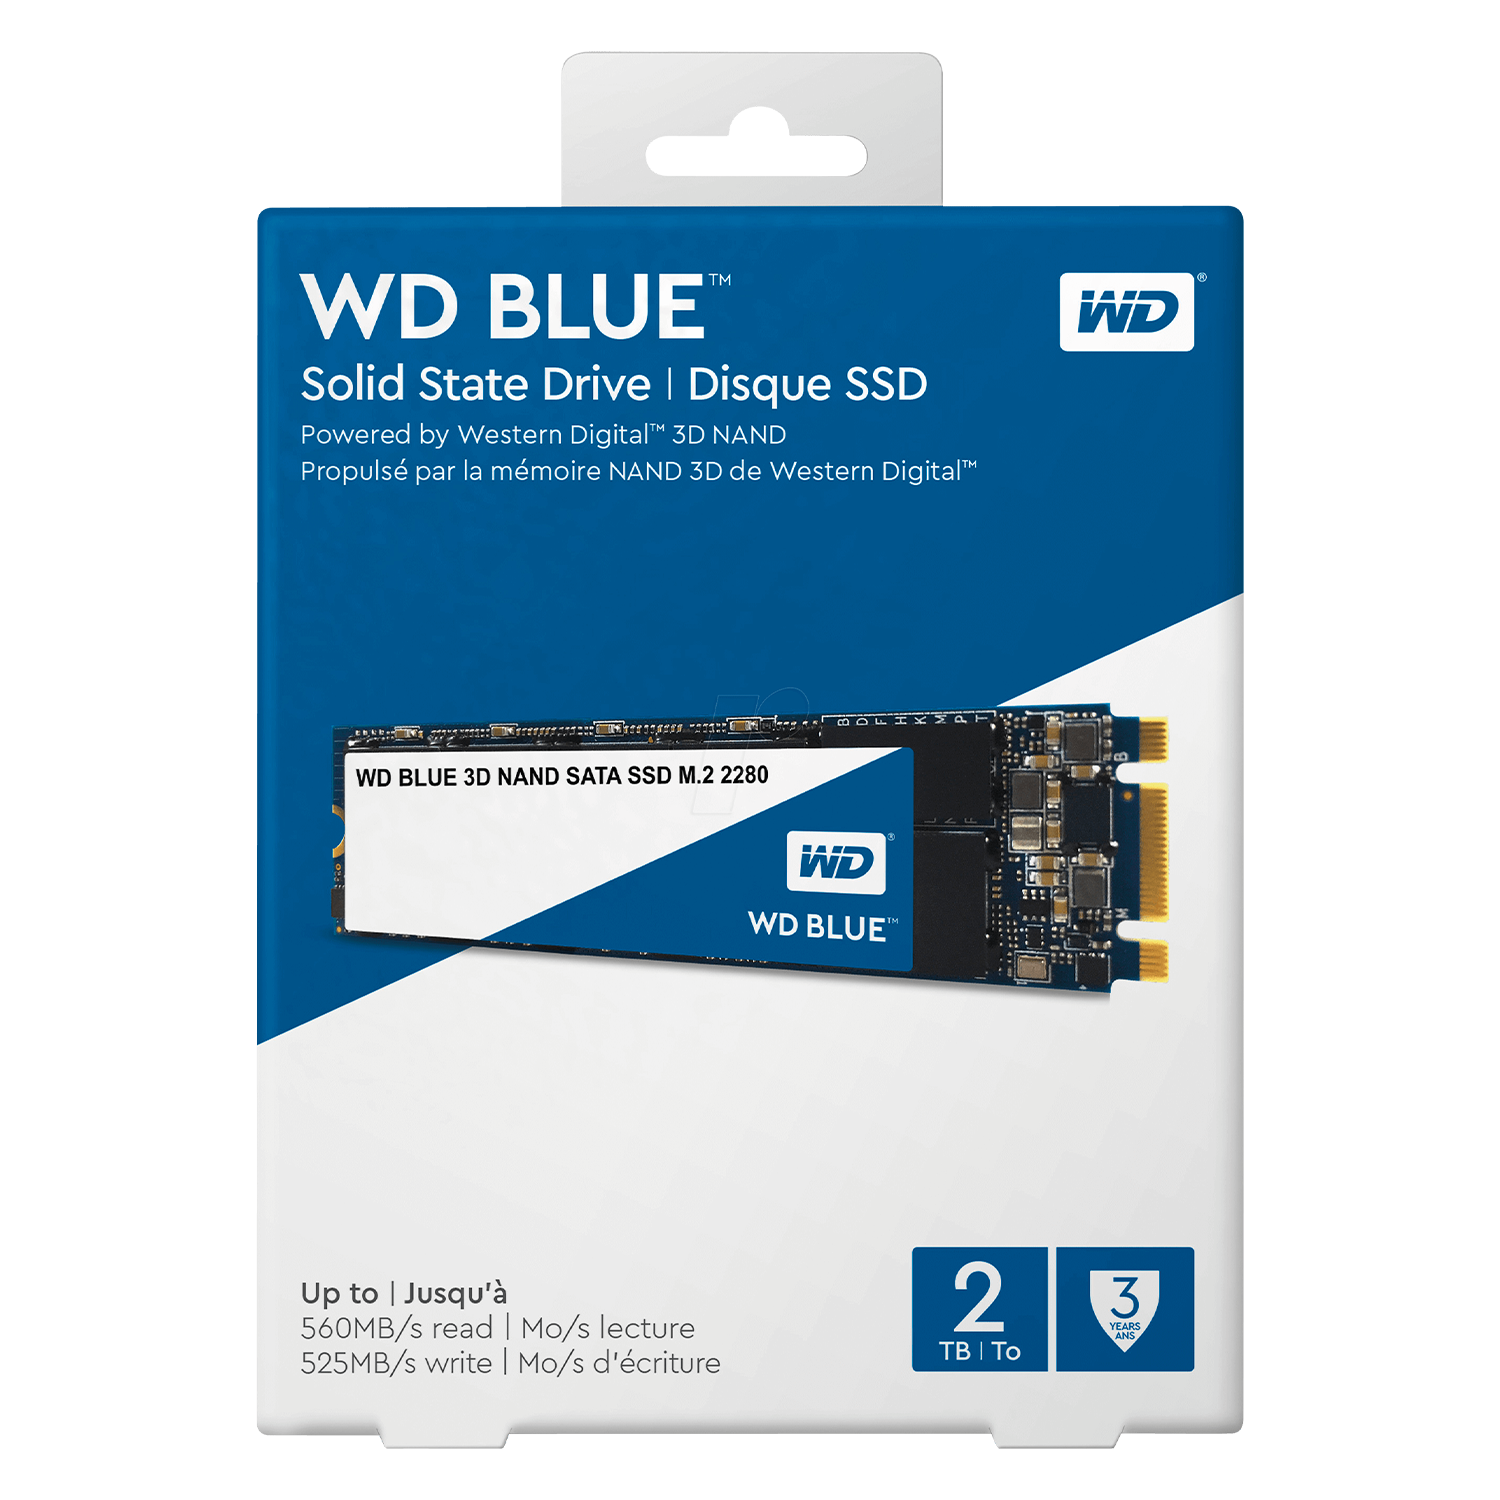 SSD M.2 Western Digital Blue 2TB / SATA 3 - (WDS200T2B0B)
